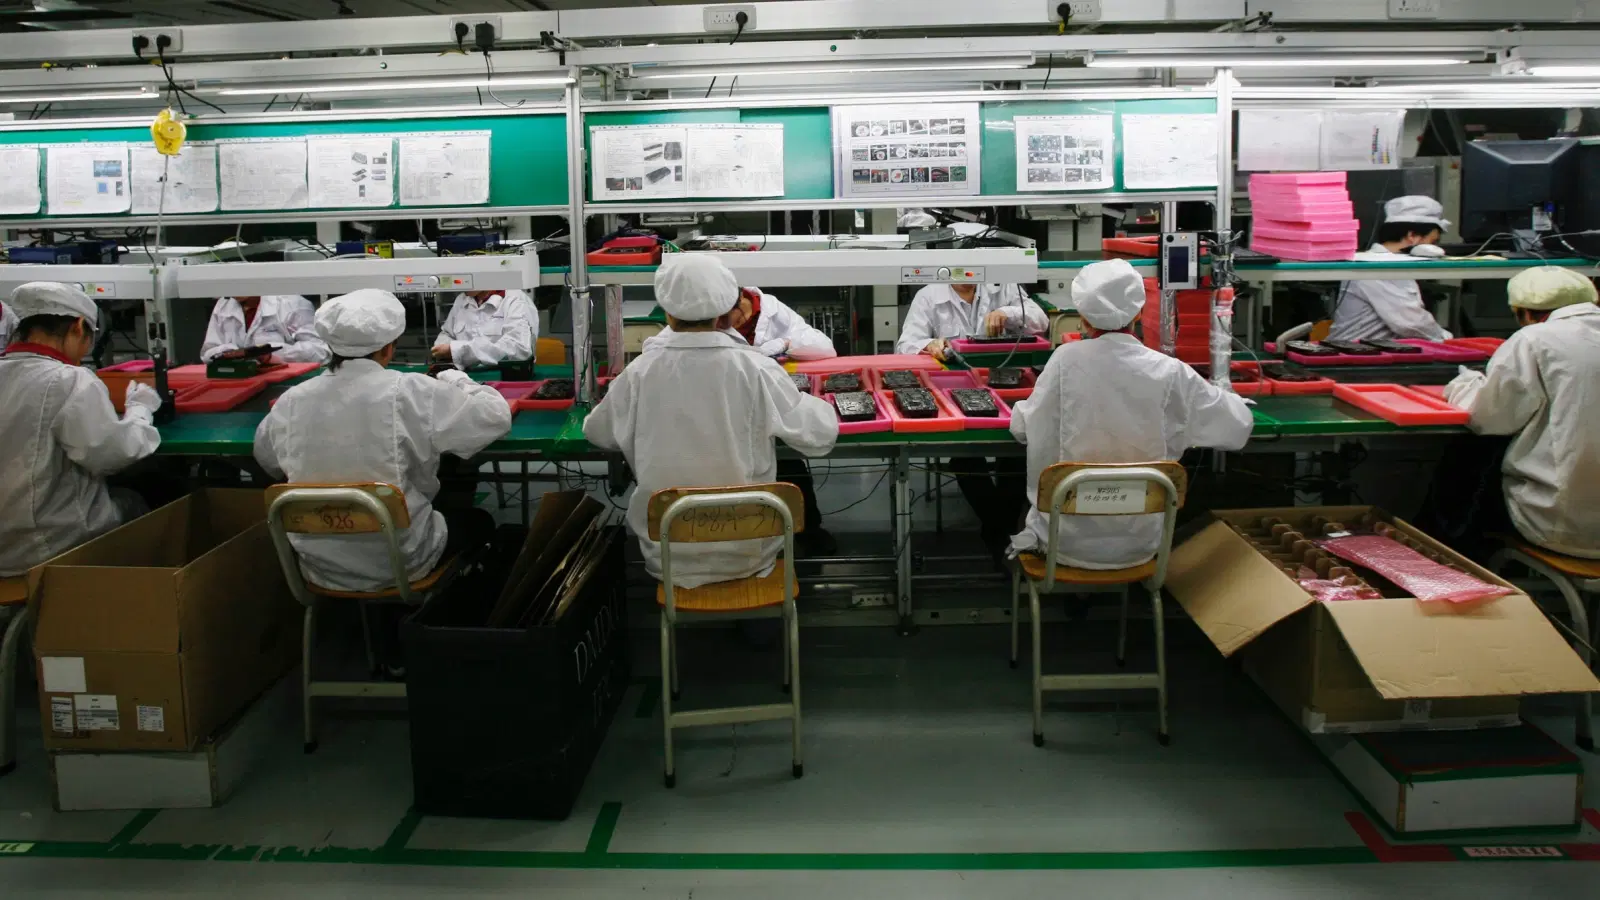 यूएस मीडिया: चिनी वस्तूंची जागतिक मागणी वेगाने वाढली आणि कारखान्यांना "श्रम वेदना" अनुभवल्या.